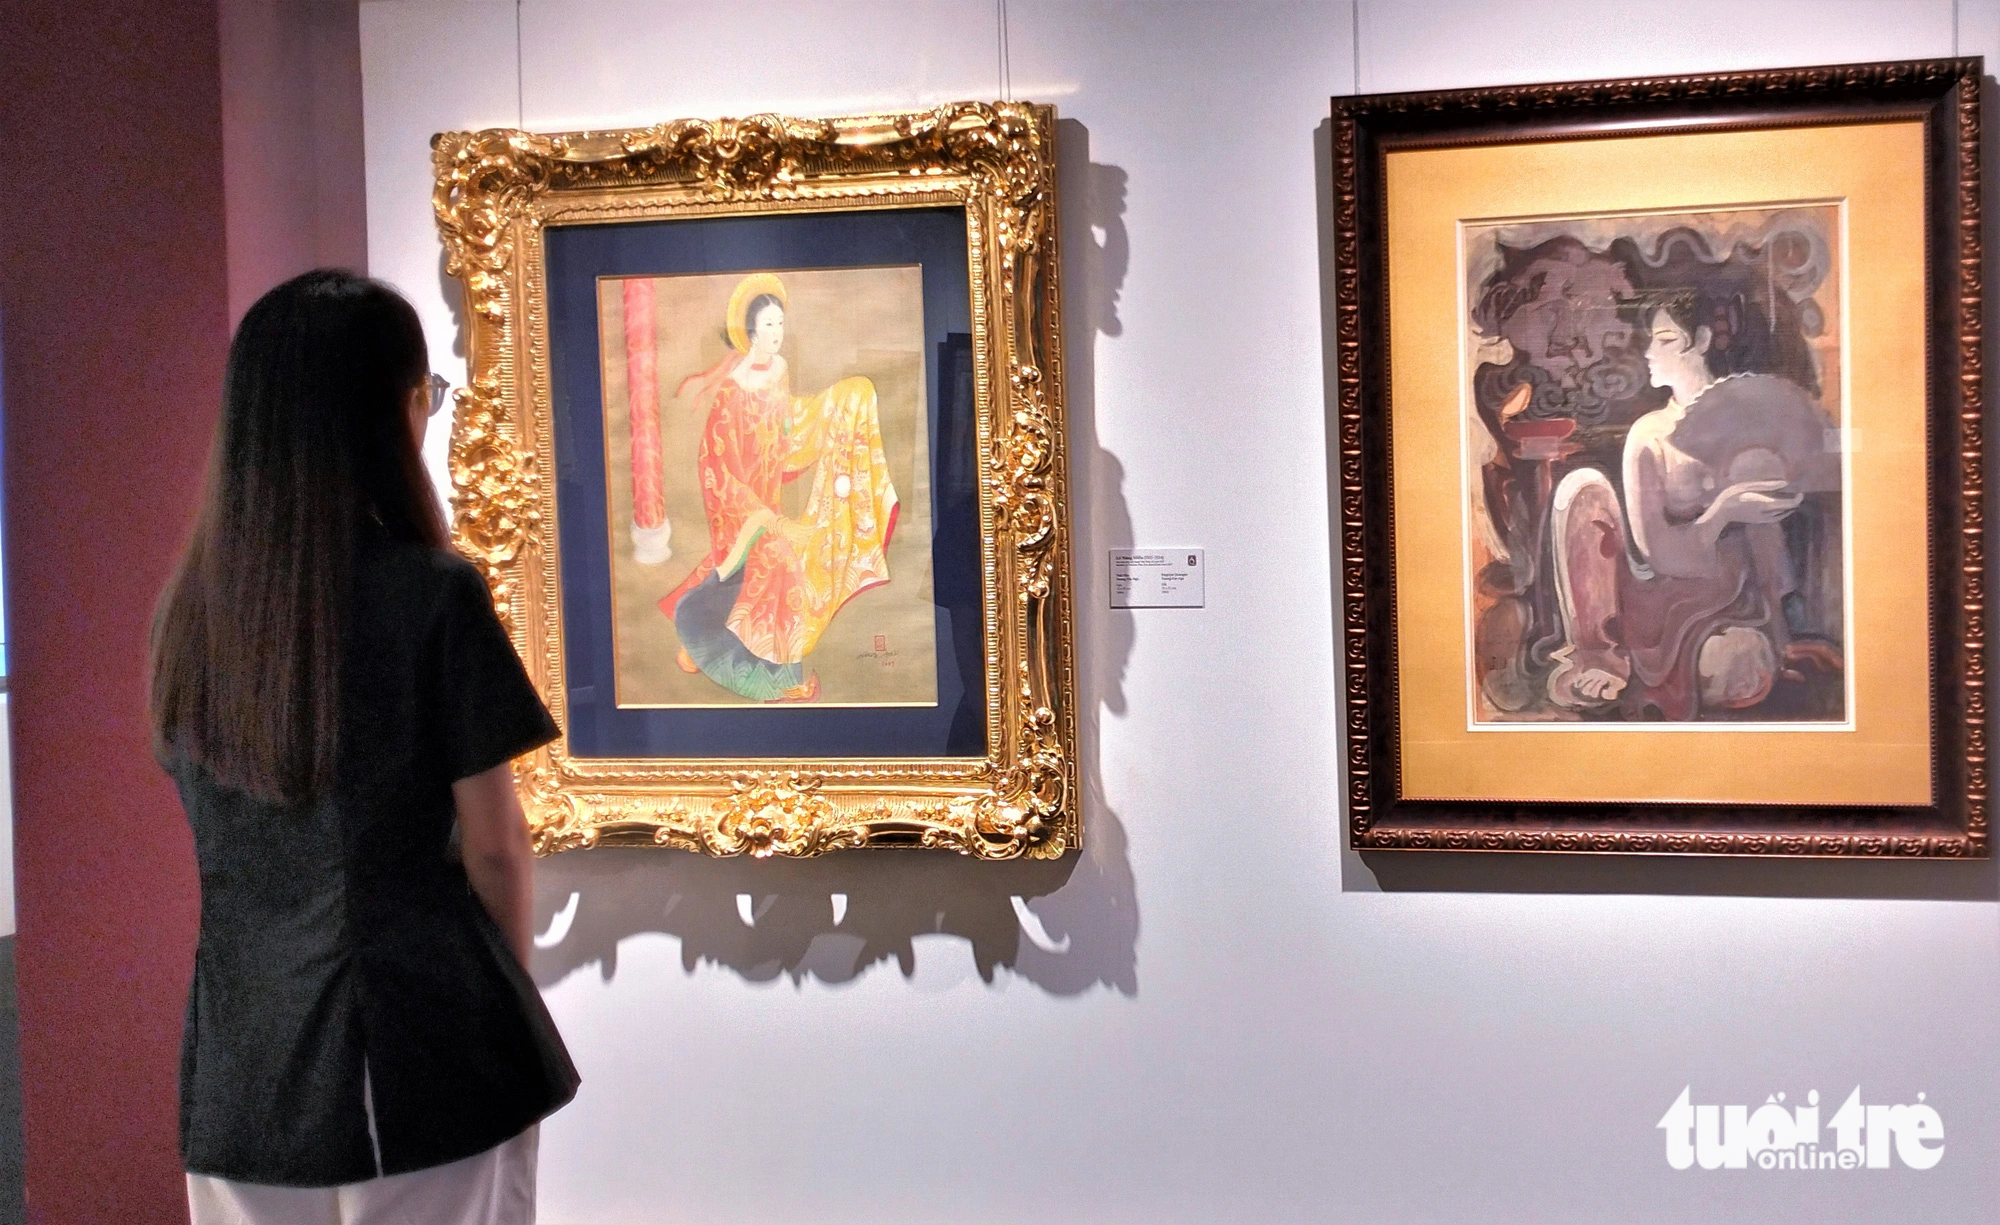 Từ trái sang: "Thái hậu Dương Vân Nga" của họa sĩ Lê Năng Hiển và "Dạ cổ hoài lang" của Trần Văn Phú.